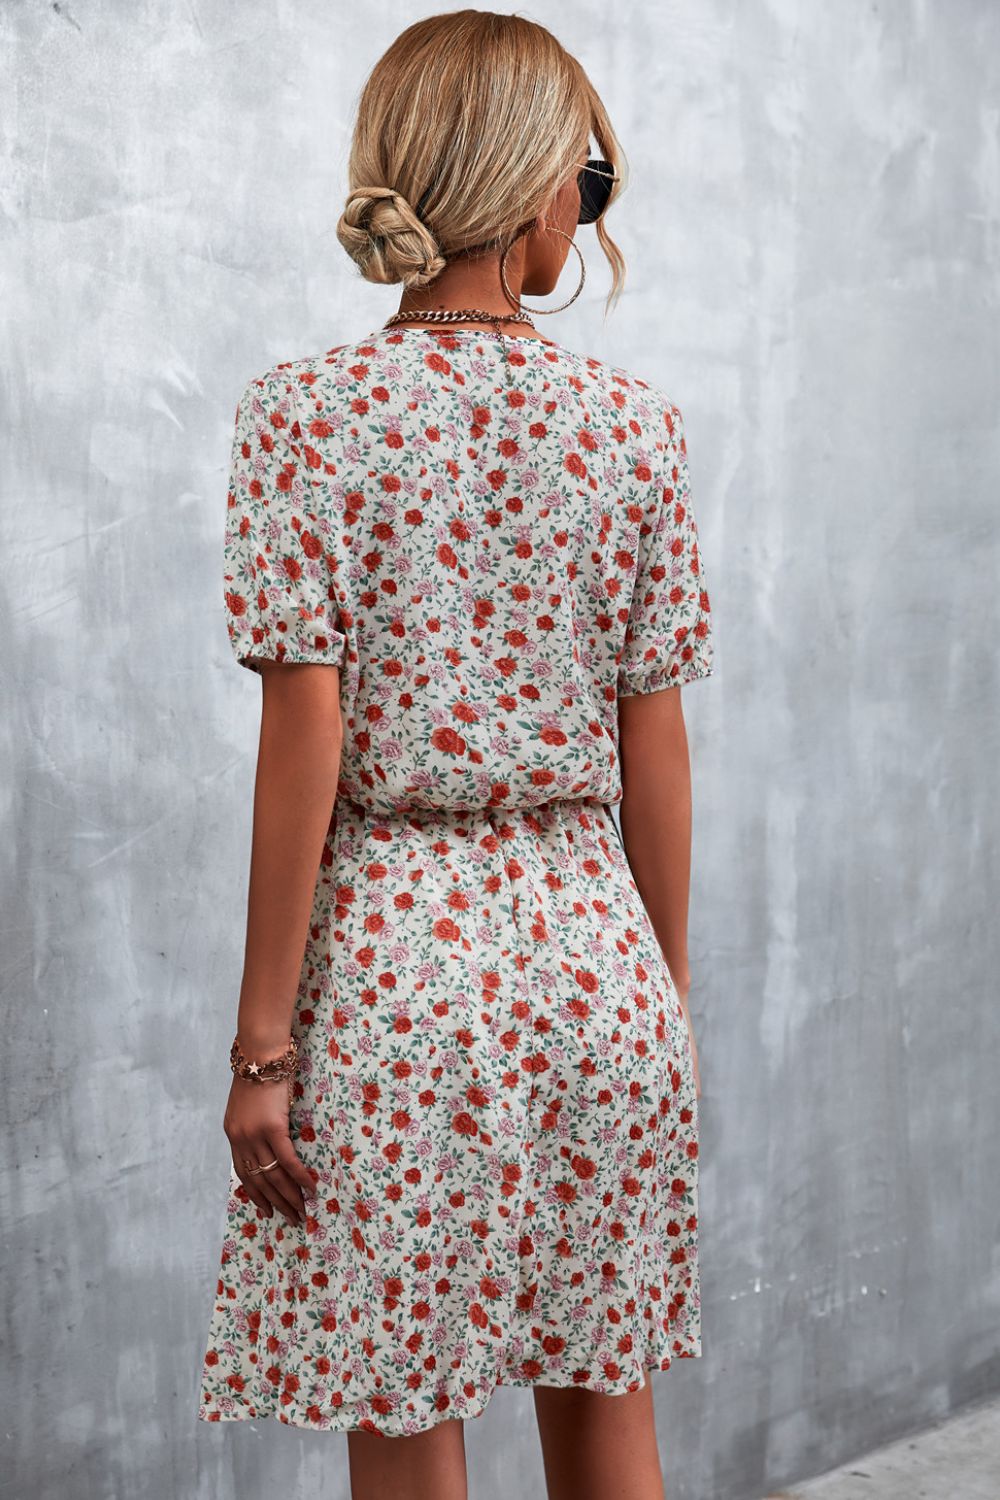 Floral Tie-Neck Short Sleeve Mini Dress, 2 Colors